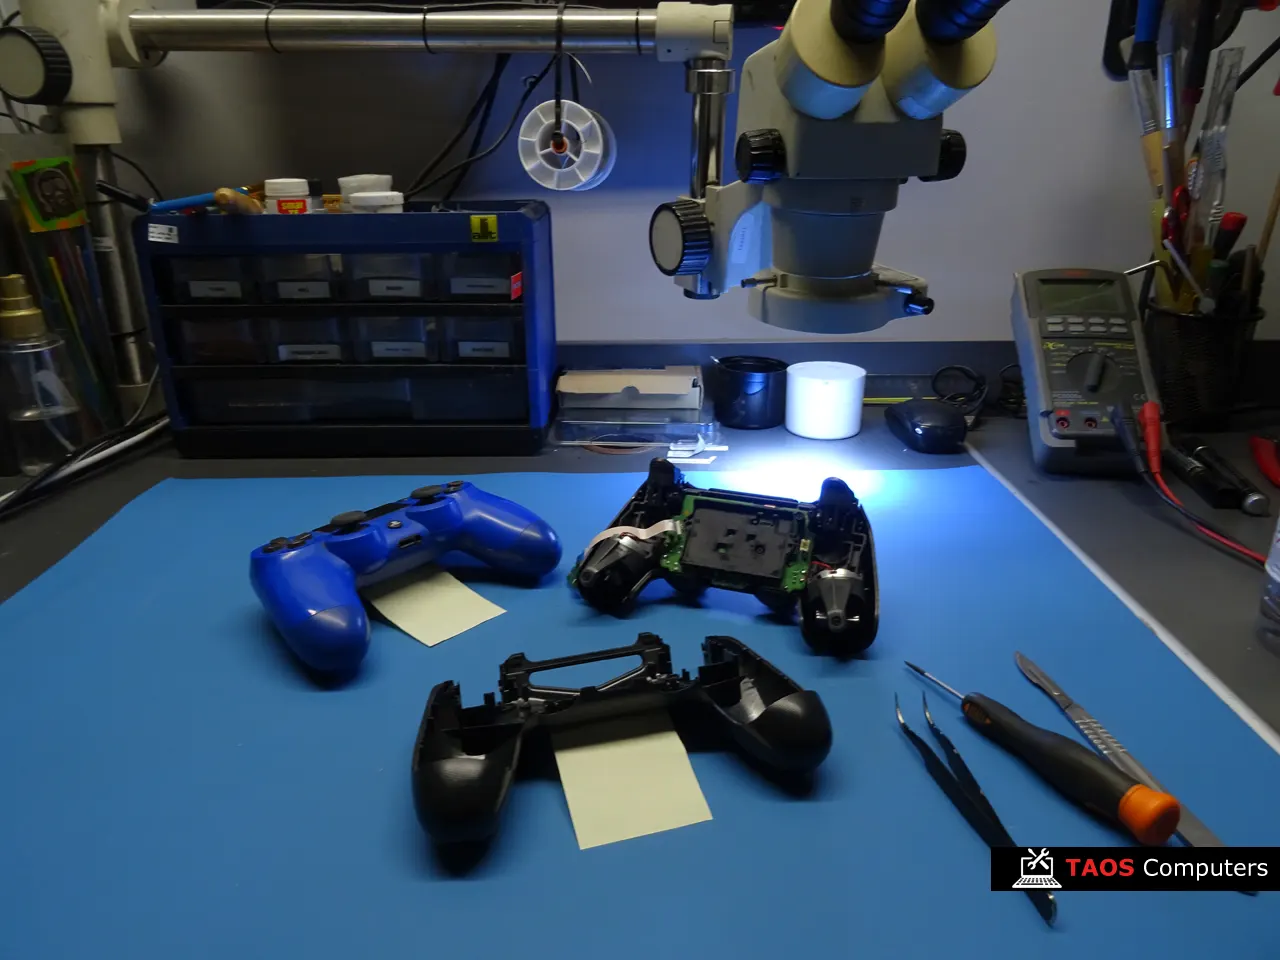 Dwa pady PlayStation 4, PS4 przed naprawą na stole serwisowym